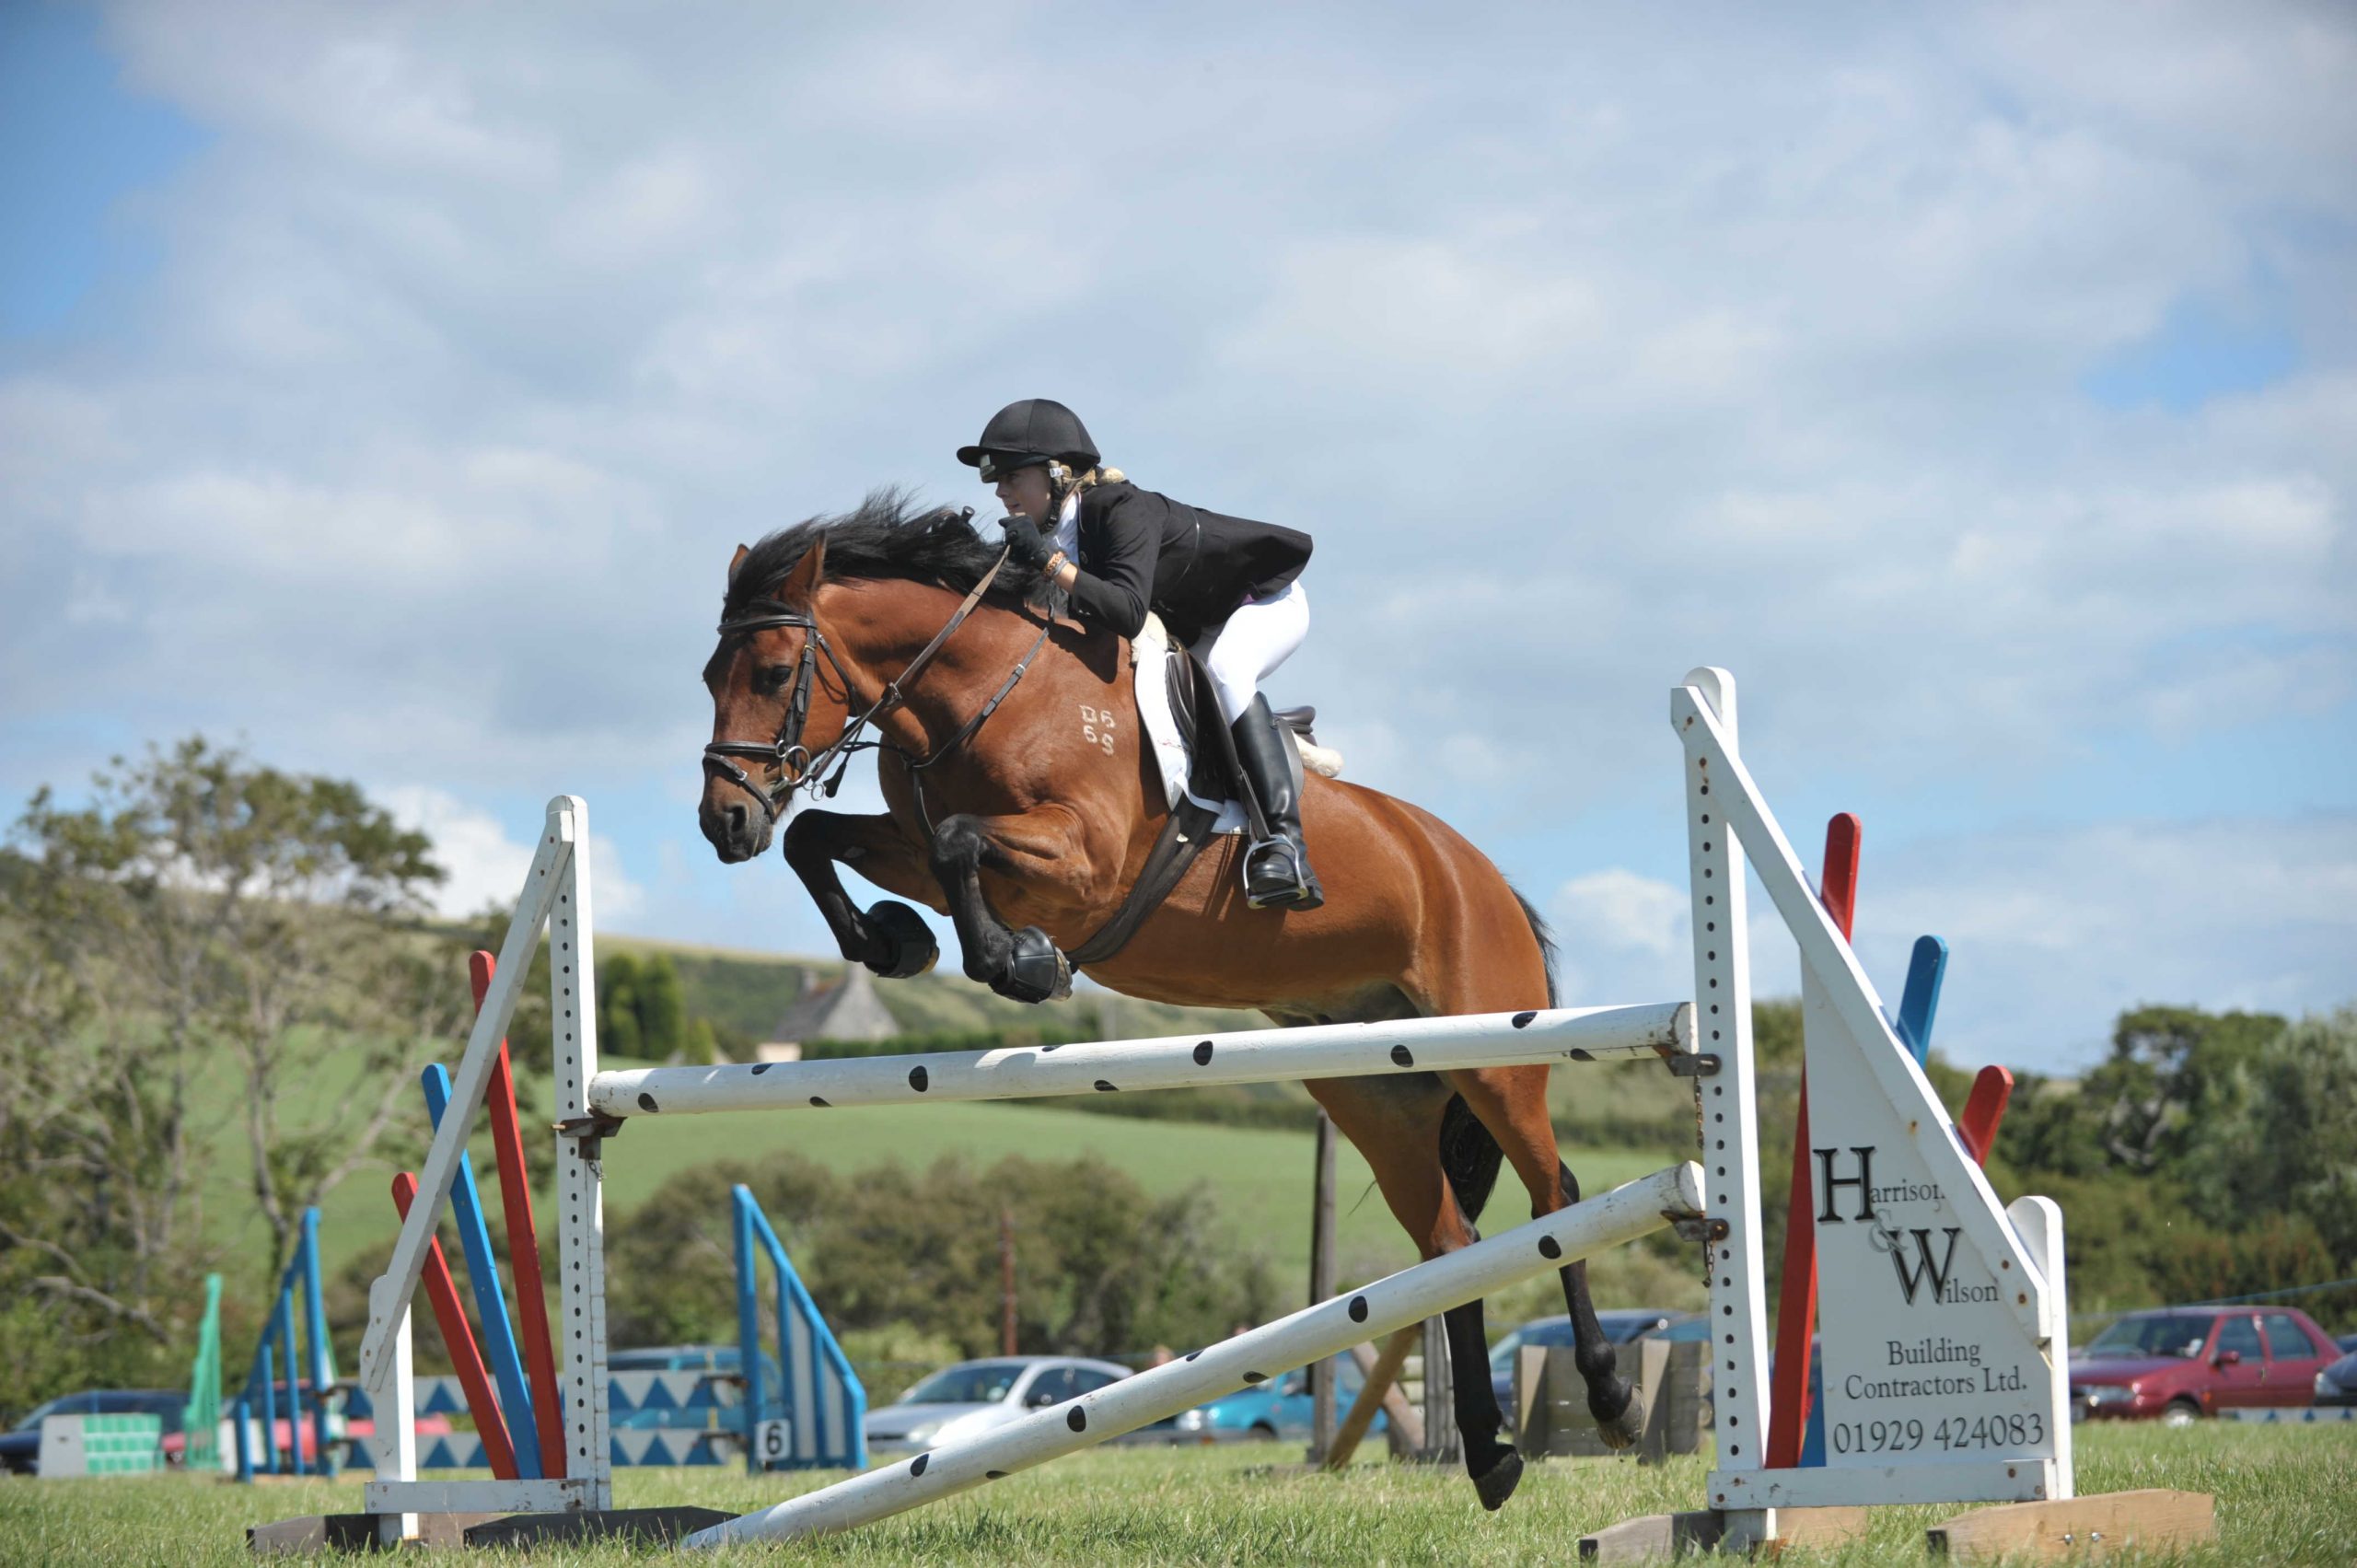 Godlingston Manor Horse Show at Swanage Dorset